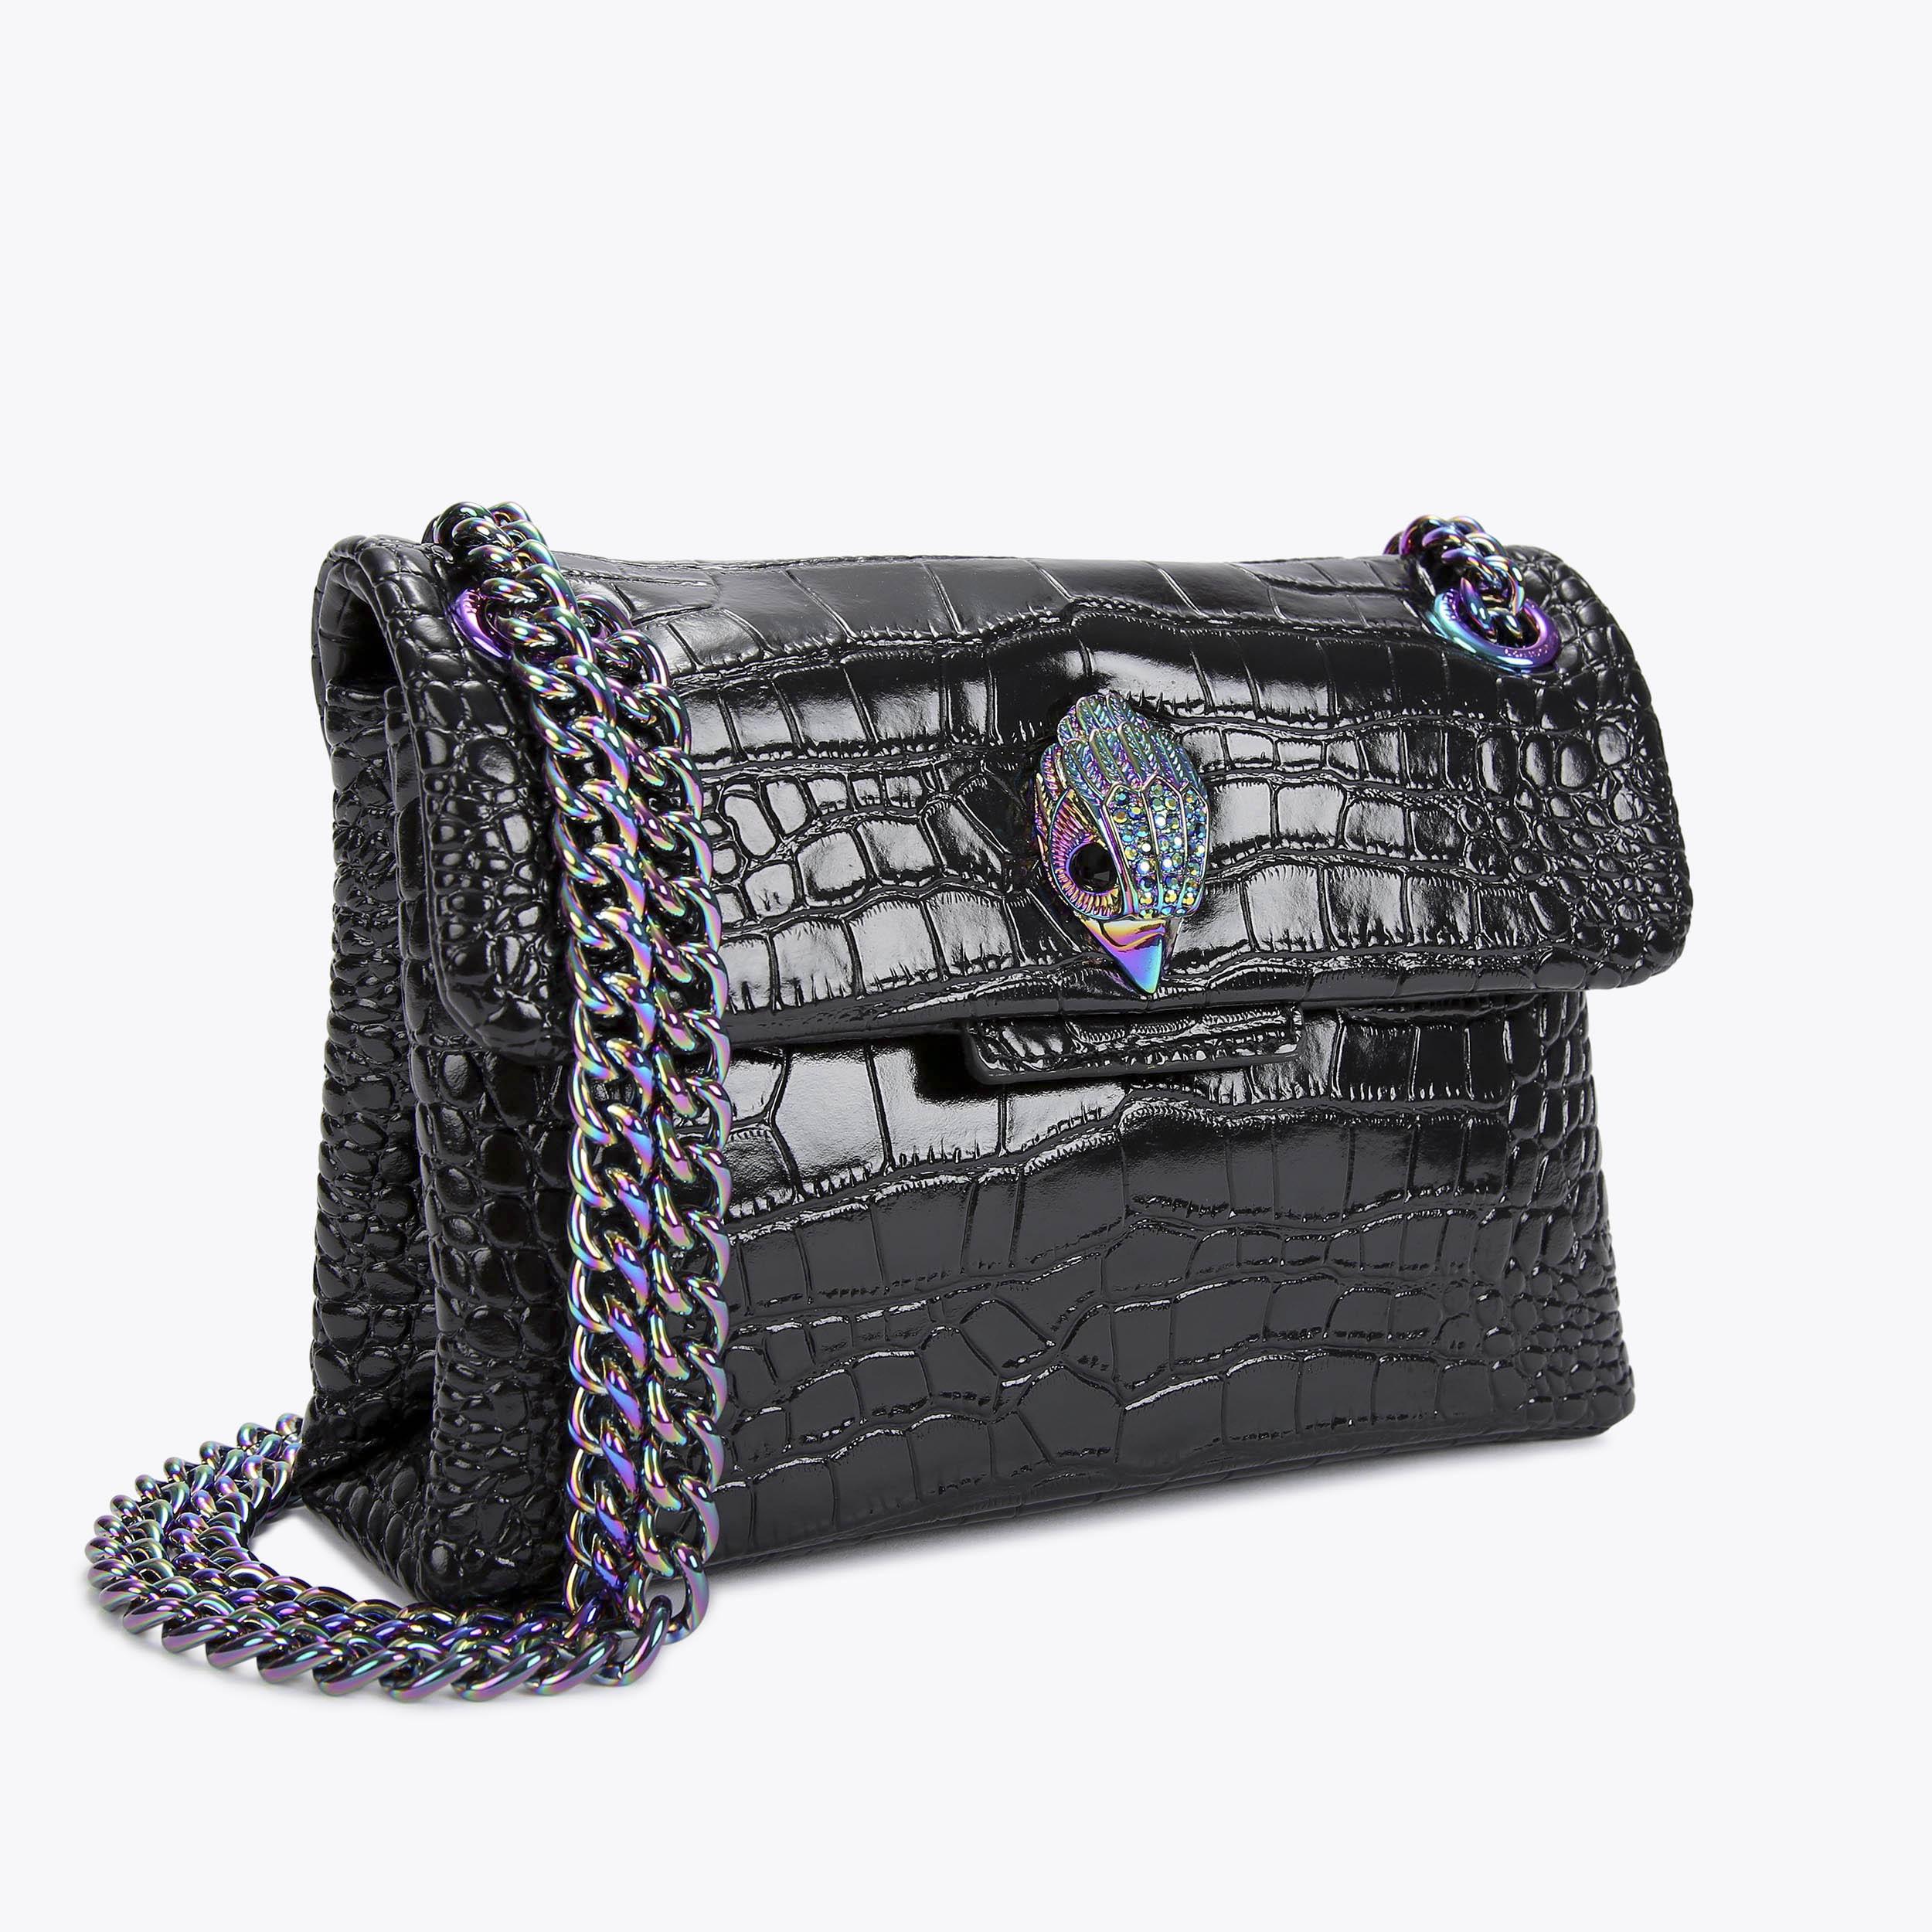 CROC MINI KENSINGTON BAG Multi/Black Croc Leather Mini Bag by KURT ...